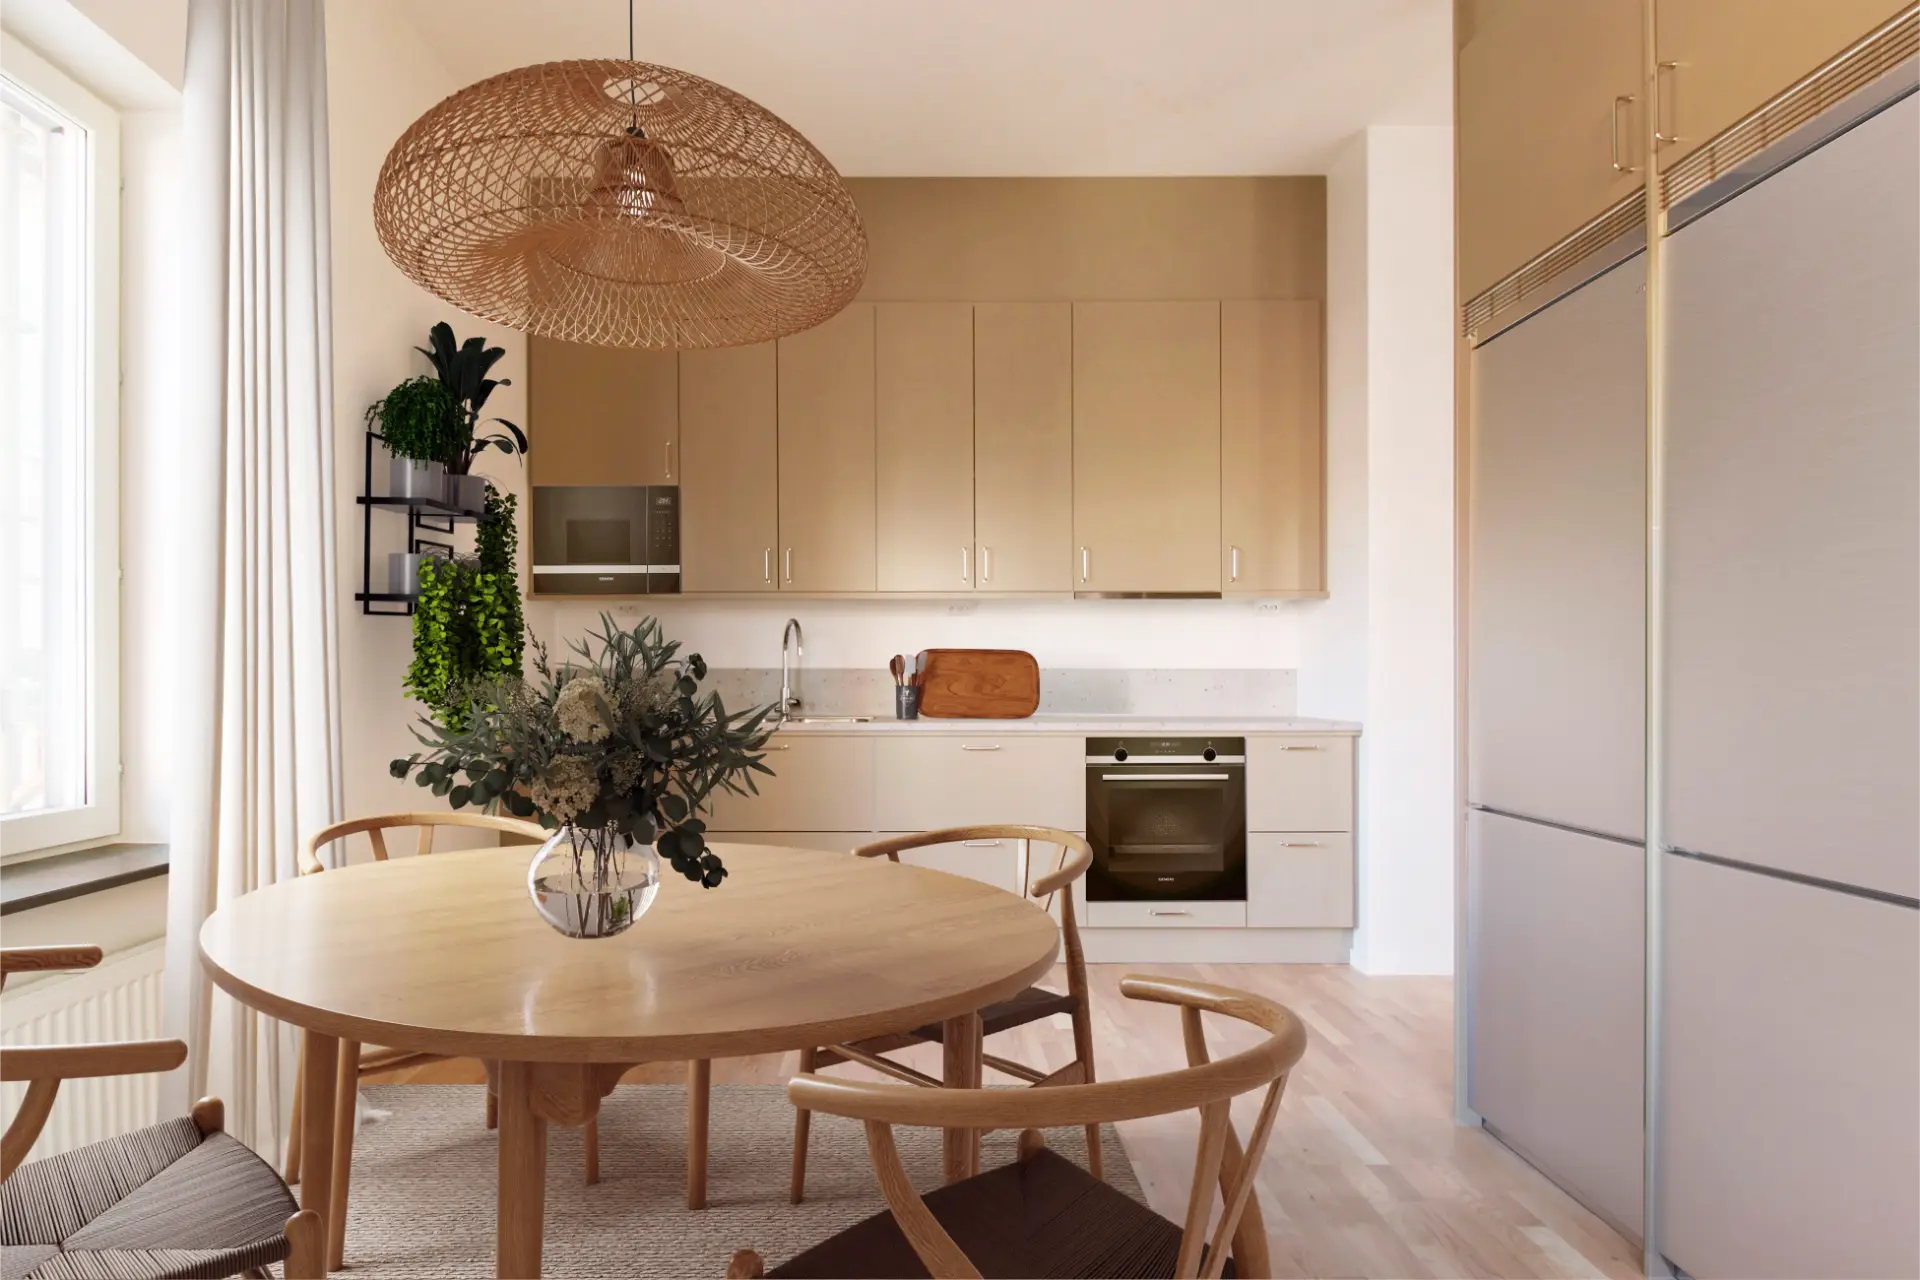 Modernt kök med beige skåp, inbyggda vitvaror och ett matbord i trä under en stor taklampa. ljuset flödar in från stora fönster, vilket förhöjer värmen i utrymmet.